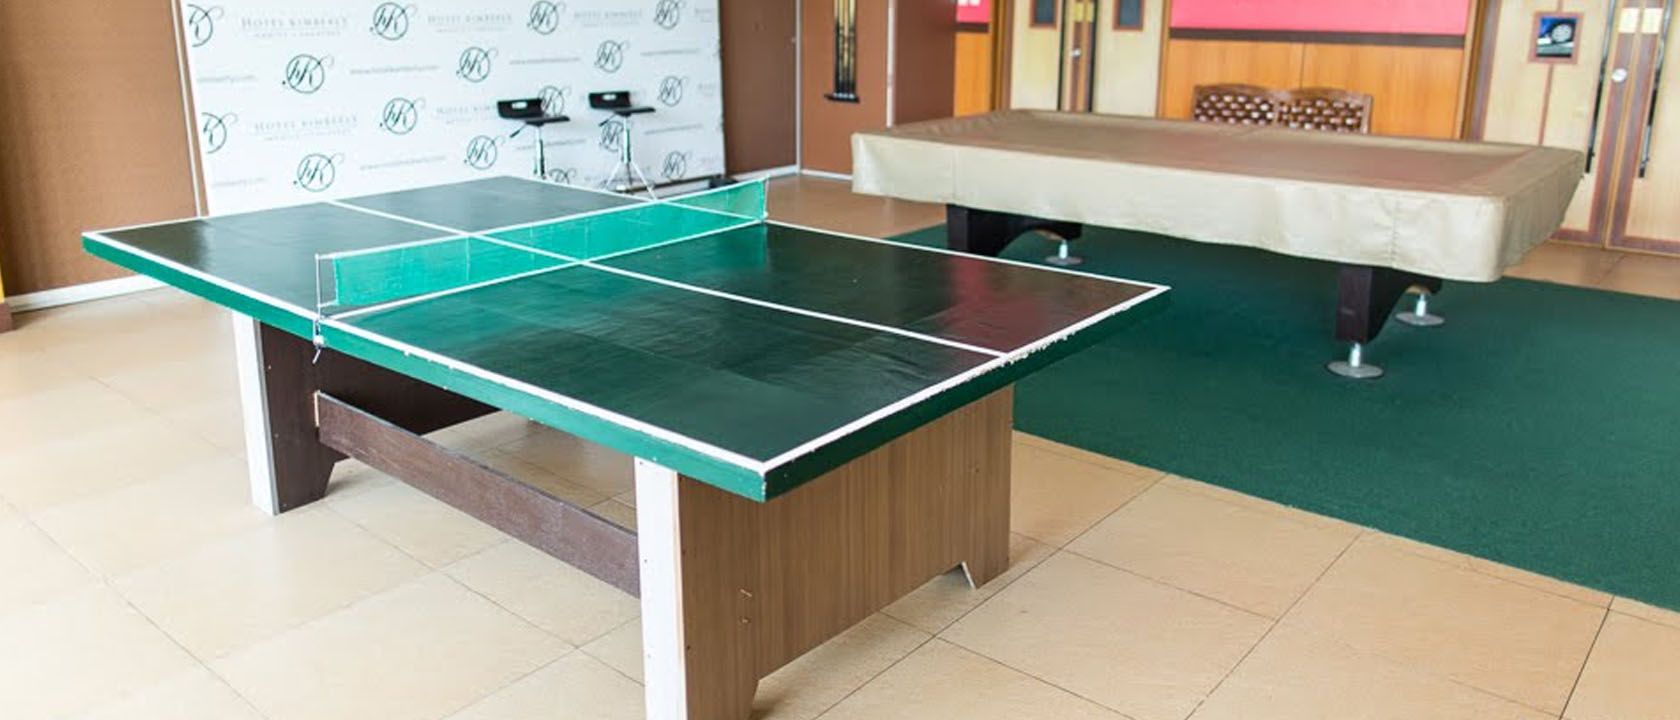 ¿Por qué comprar una mesa de ping pong barata? Ofertas